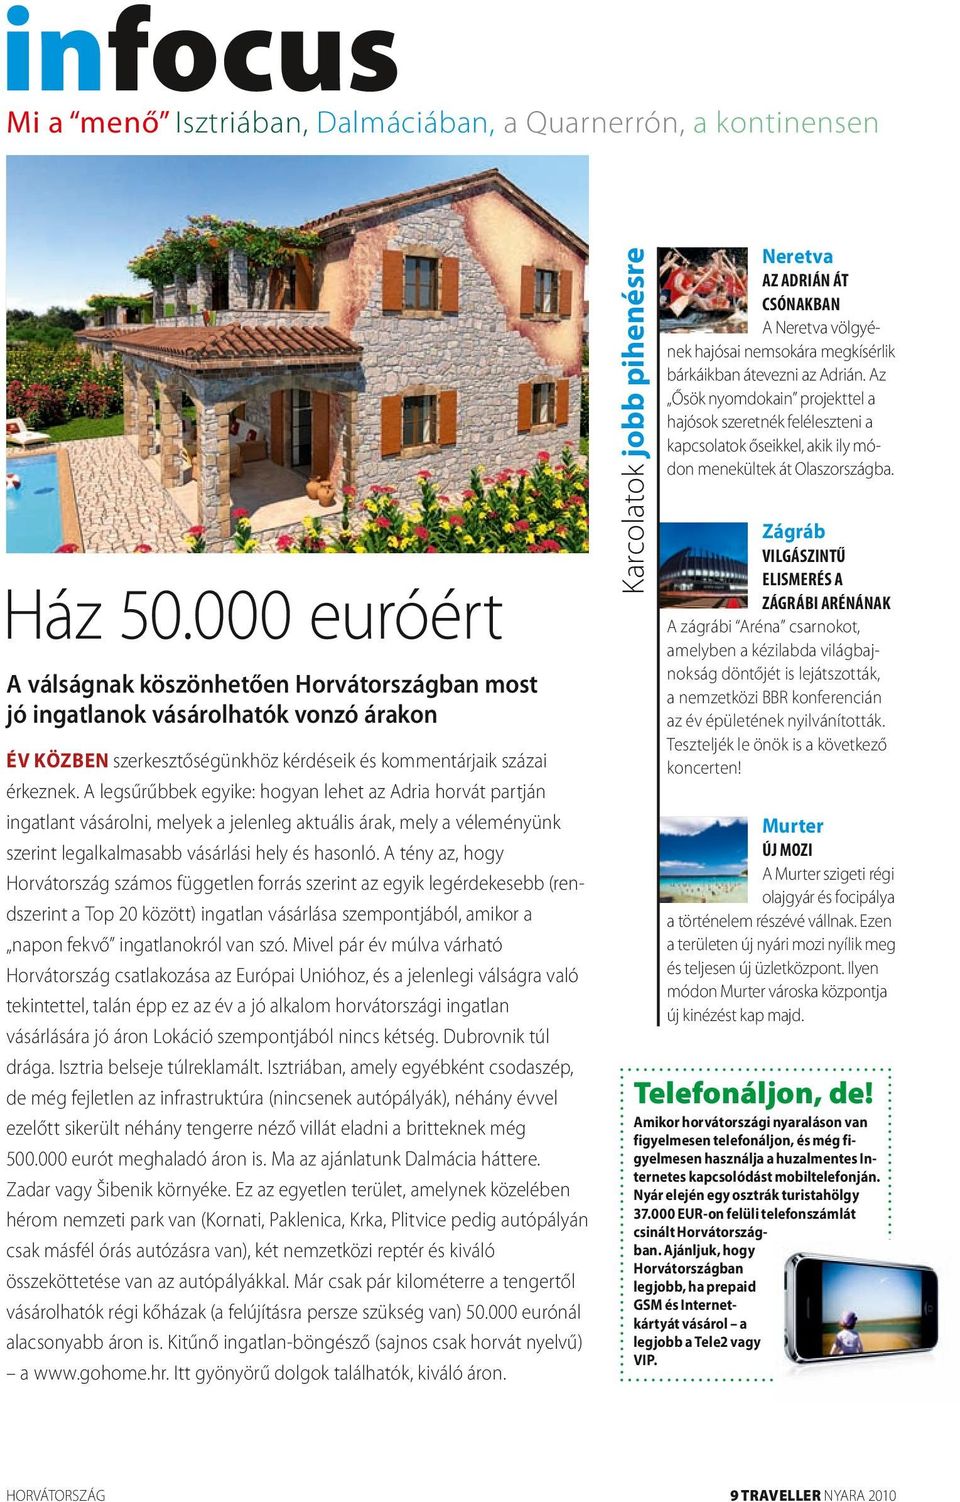 A tény az, hogy Horvátország számos független forrás szerint az egyik legérdekesebb (rendszerint a Top 20 között) ingatlan vásárlása szempontjából, amikor a napon fekvő ingatlanokról van szó.